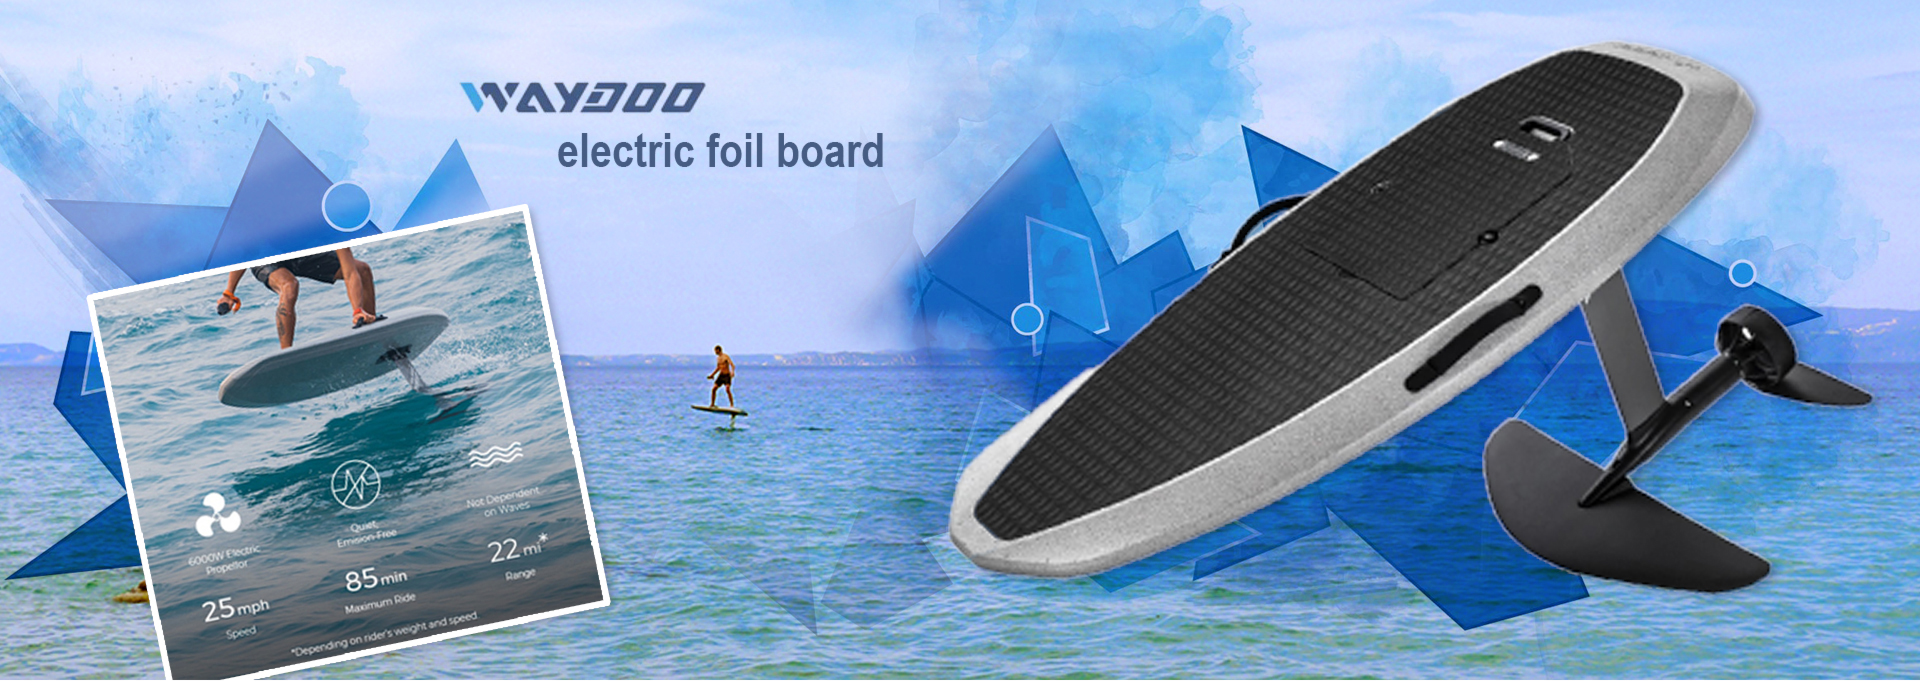 WayDoo_e-foil-board-surfCenter-Katsareas